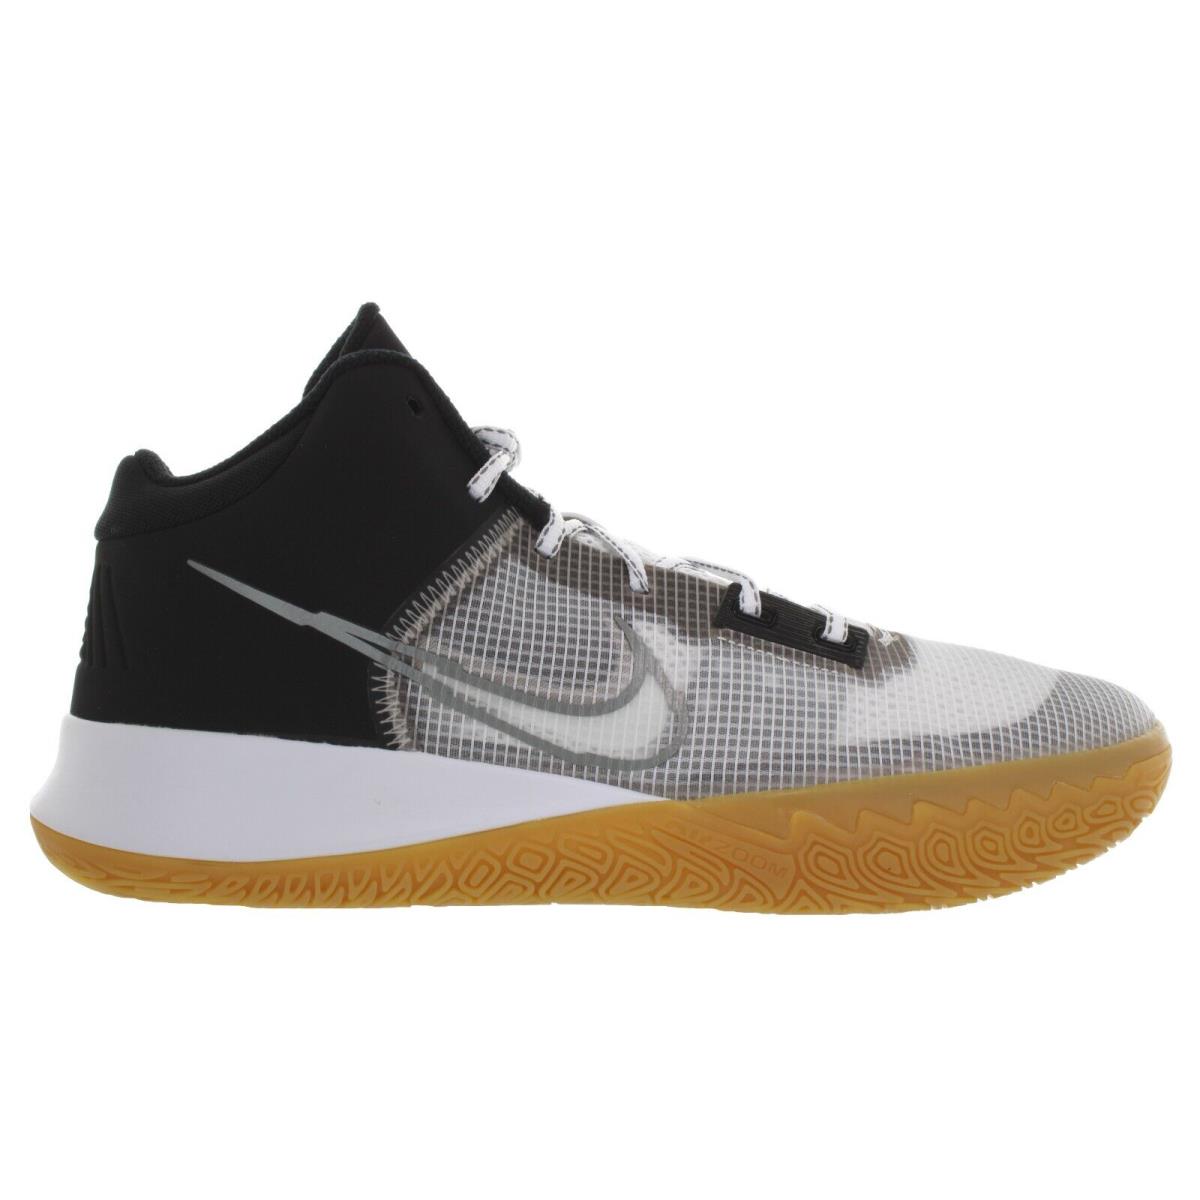 Nike Men`s Kyrie Flytrap IV Black-grey Basketball Shoes Size 13 - 14 - Black, Metallic Cool Grey, White